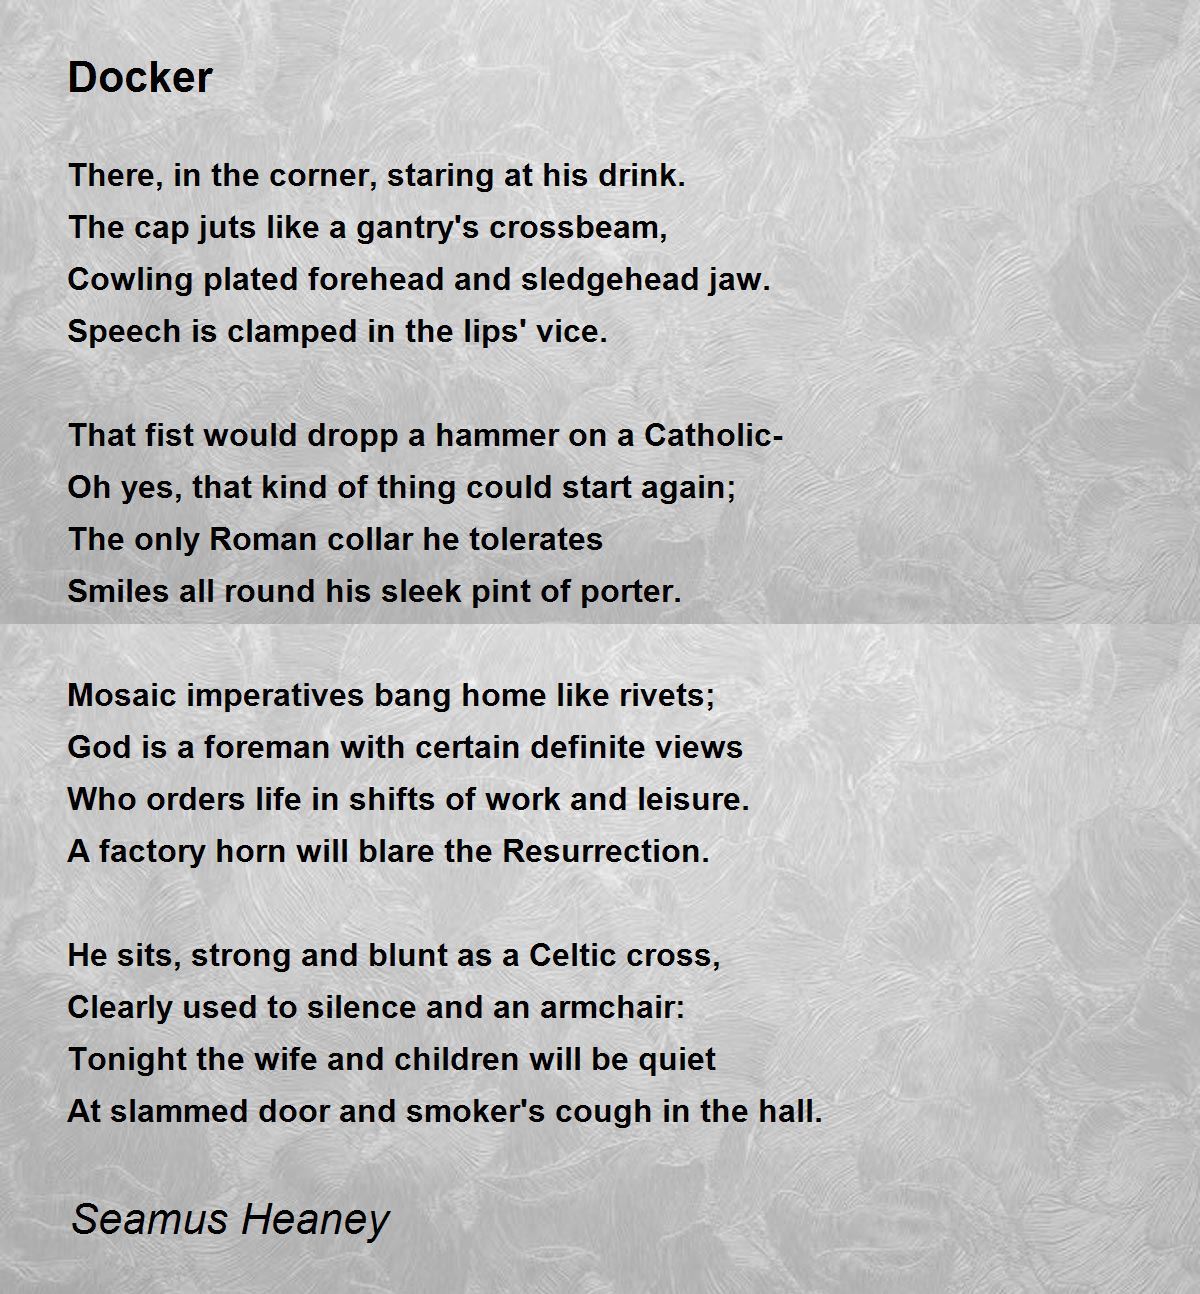 Docker - Docker Poem by Seamus Heaney